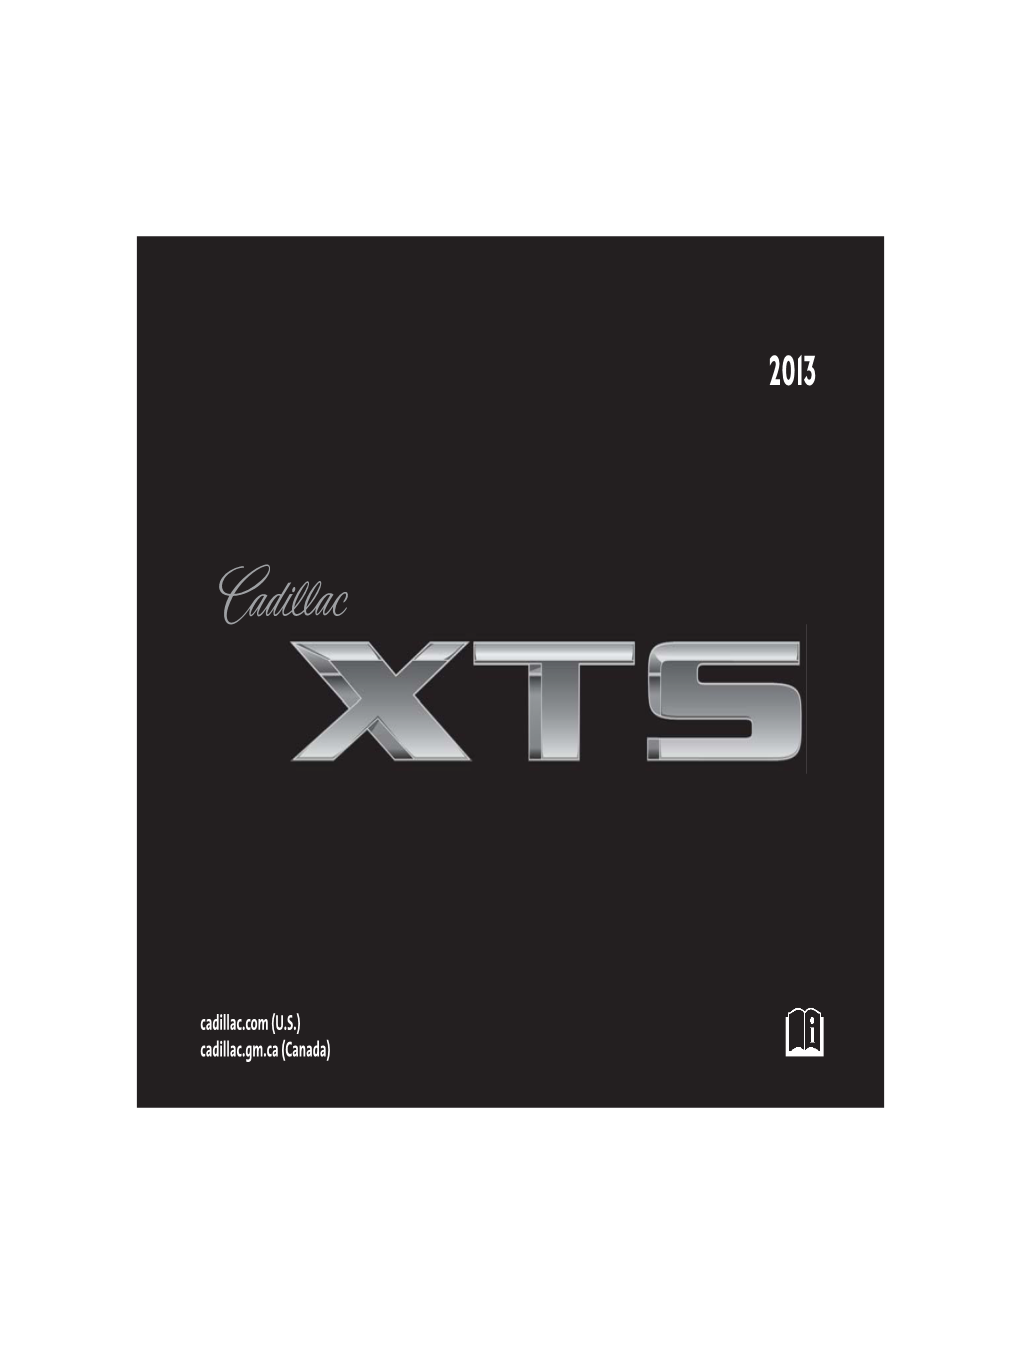 2013 Cadillac XTS Owner Manual M